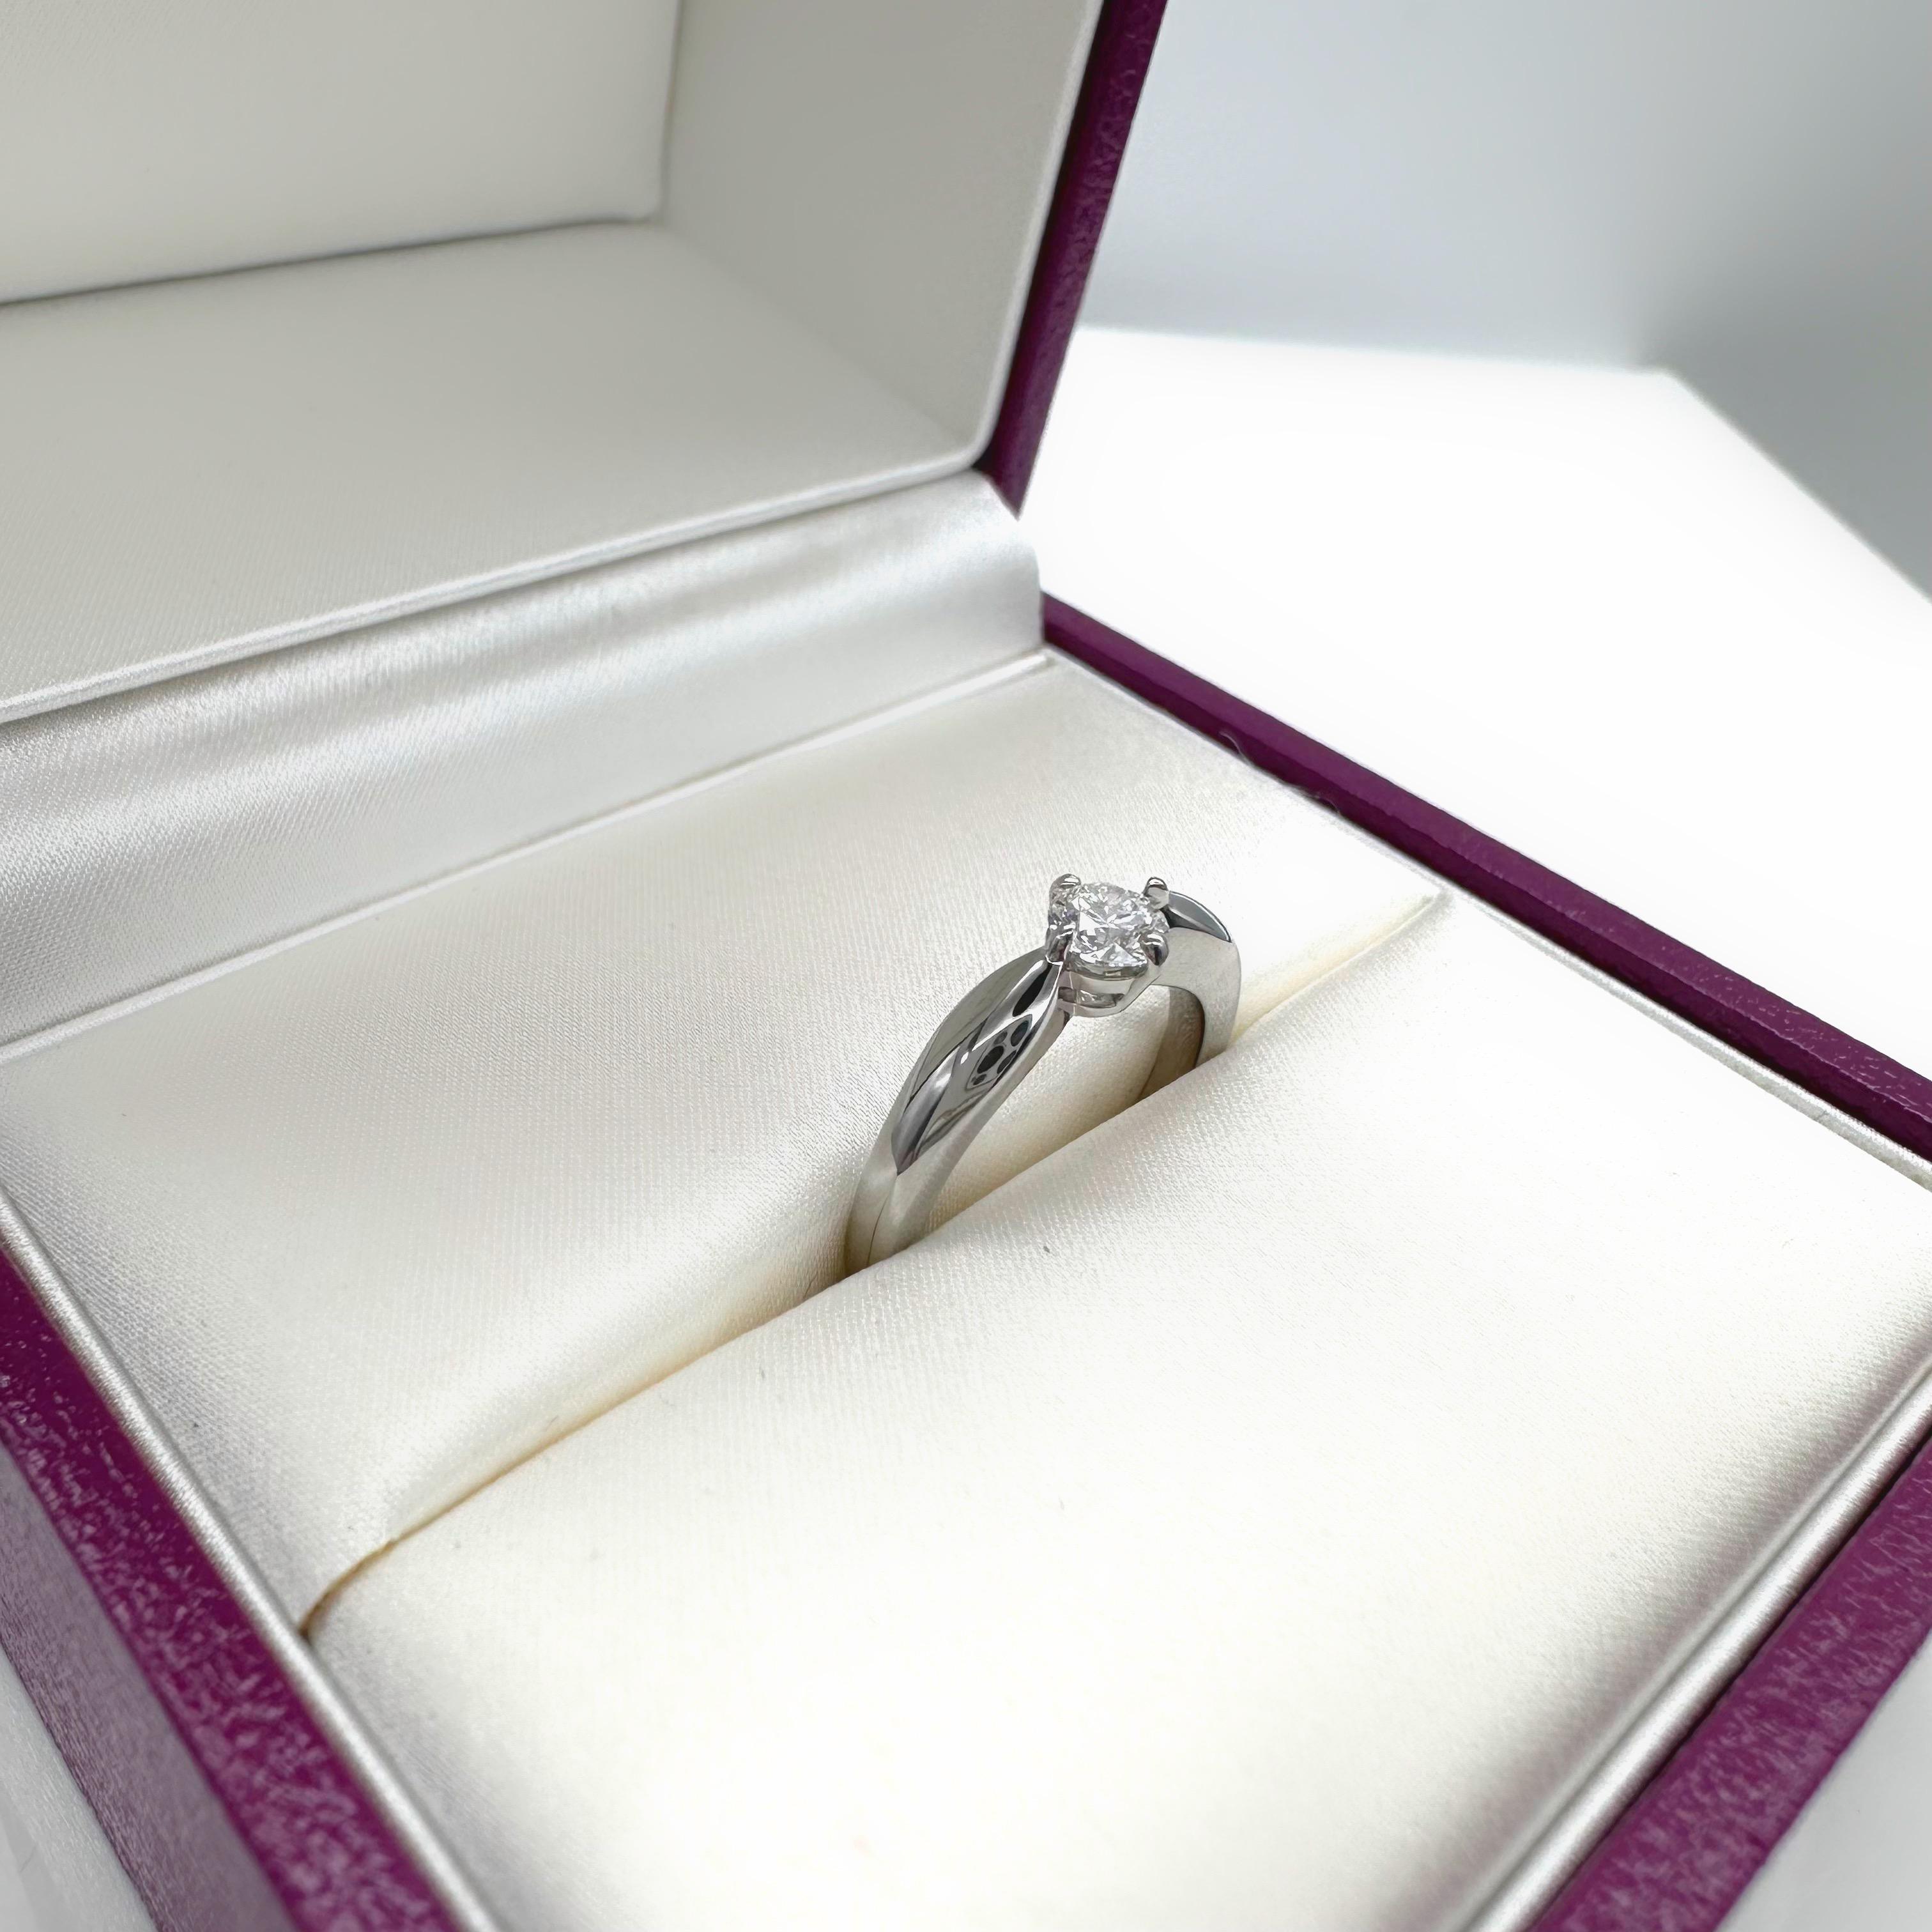 Bvlgari Dedicata a Venezia Torcello Round Diamond 0.30 Tcw Engagement Ring For Sale 2